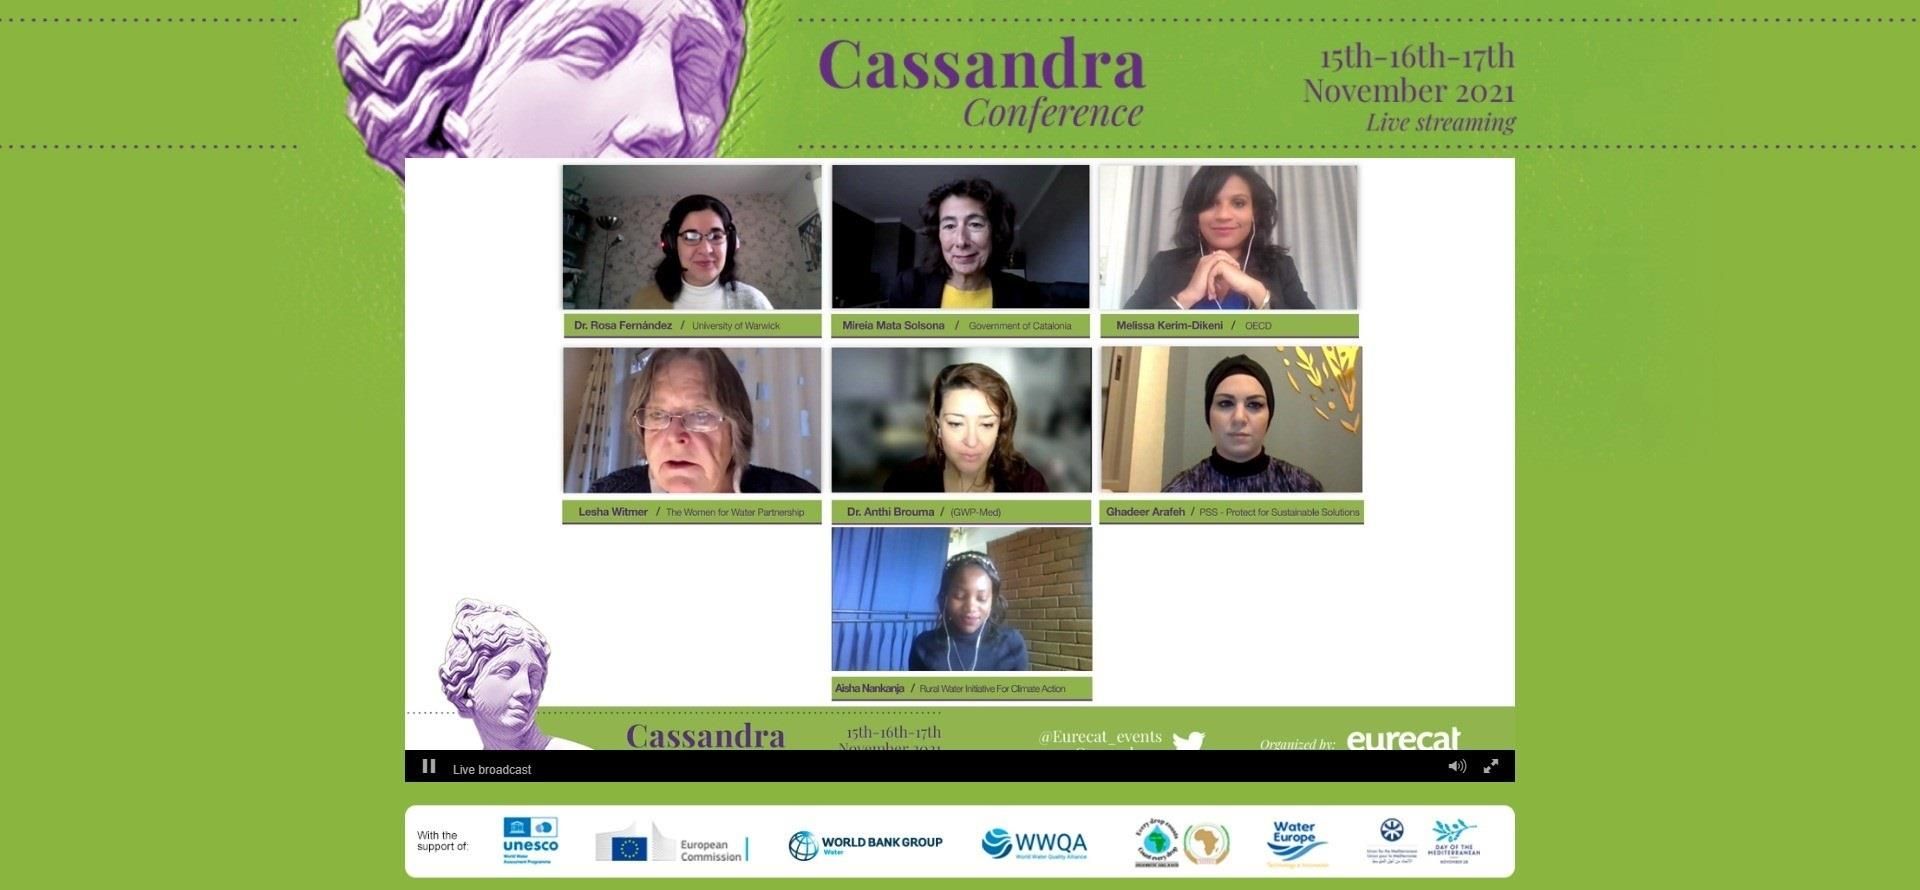 Imagen de la segunda jornada de la conferencia internacional Cassandra, organizada por el Centro Tecnológico de Cataluña (Eurecat).